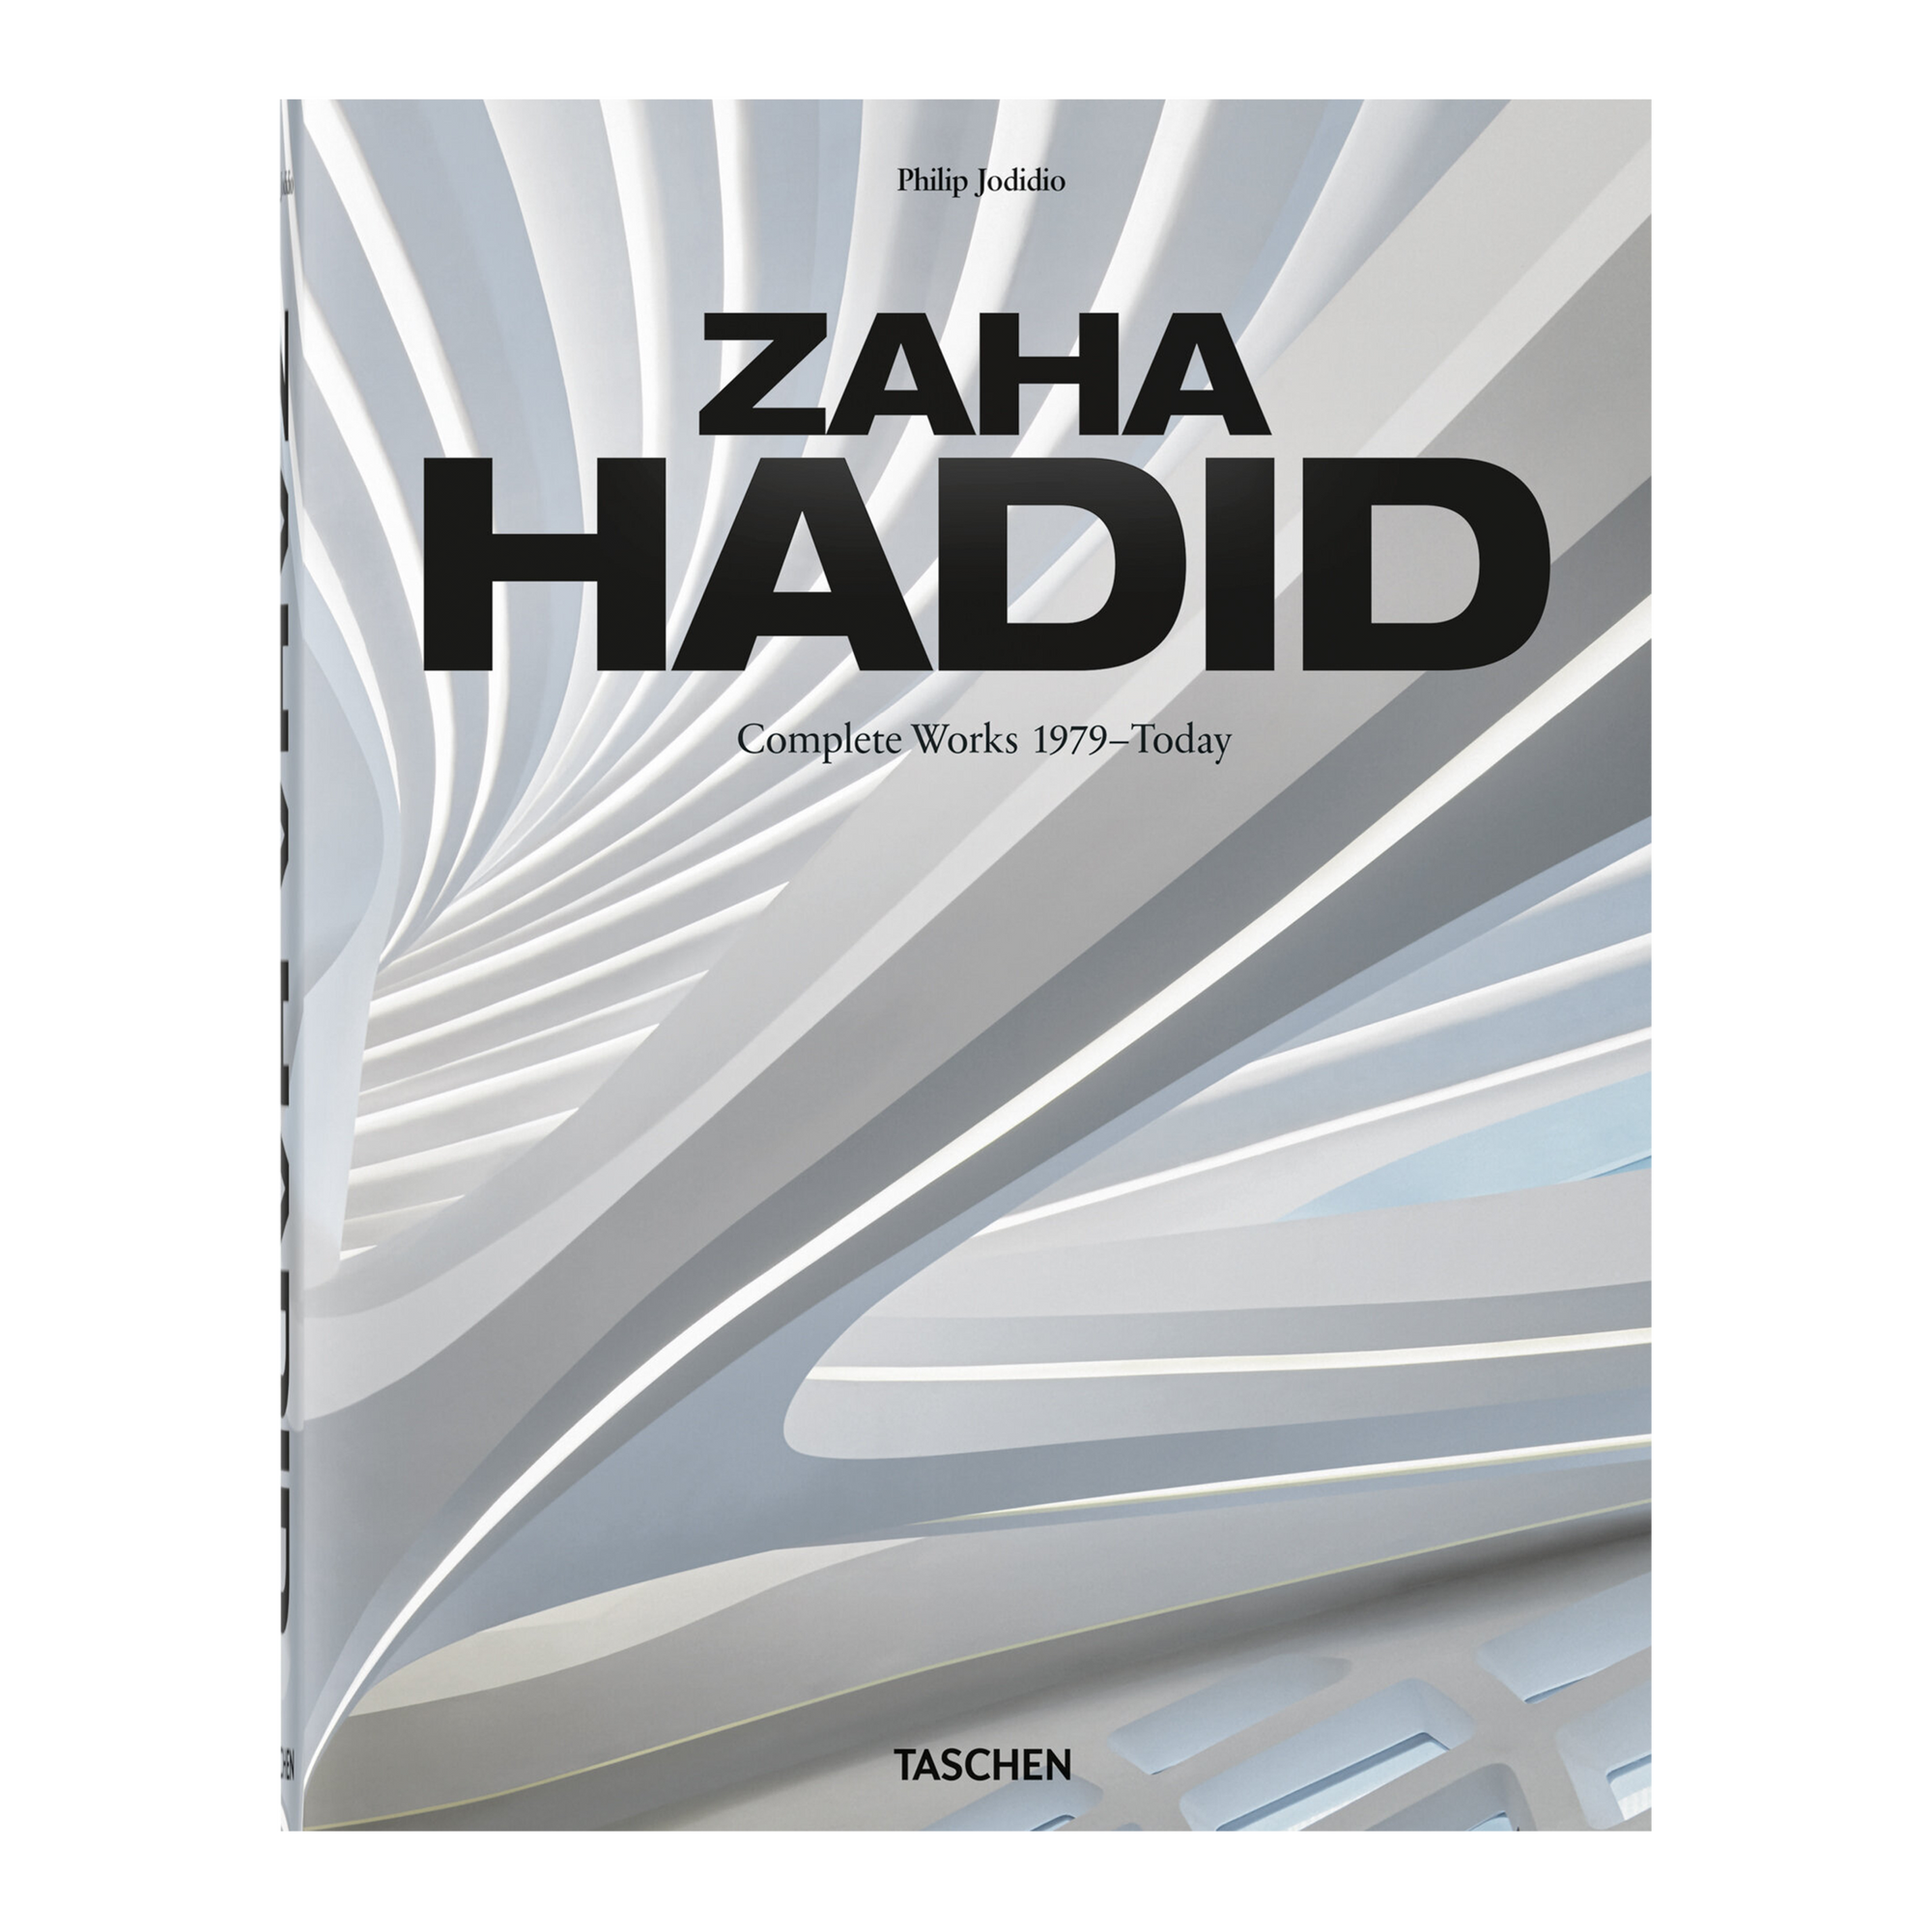 Zaha Hadid was a revolutionary architect.